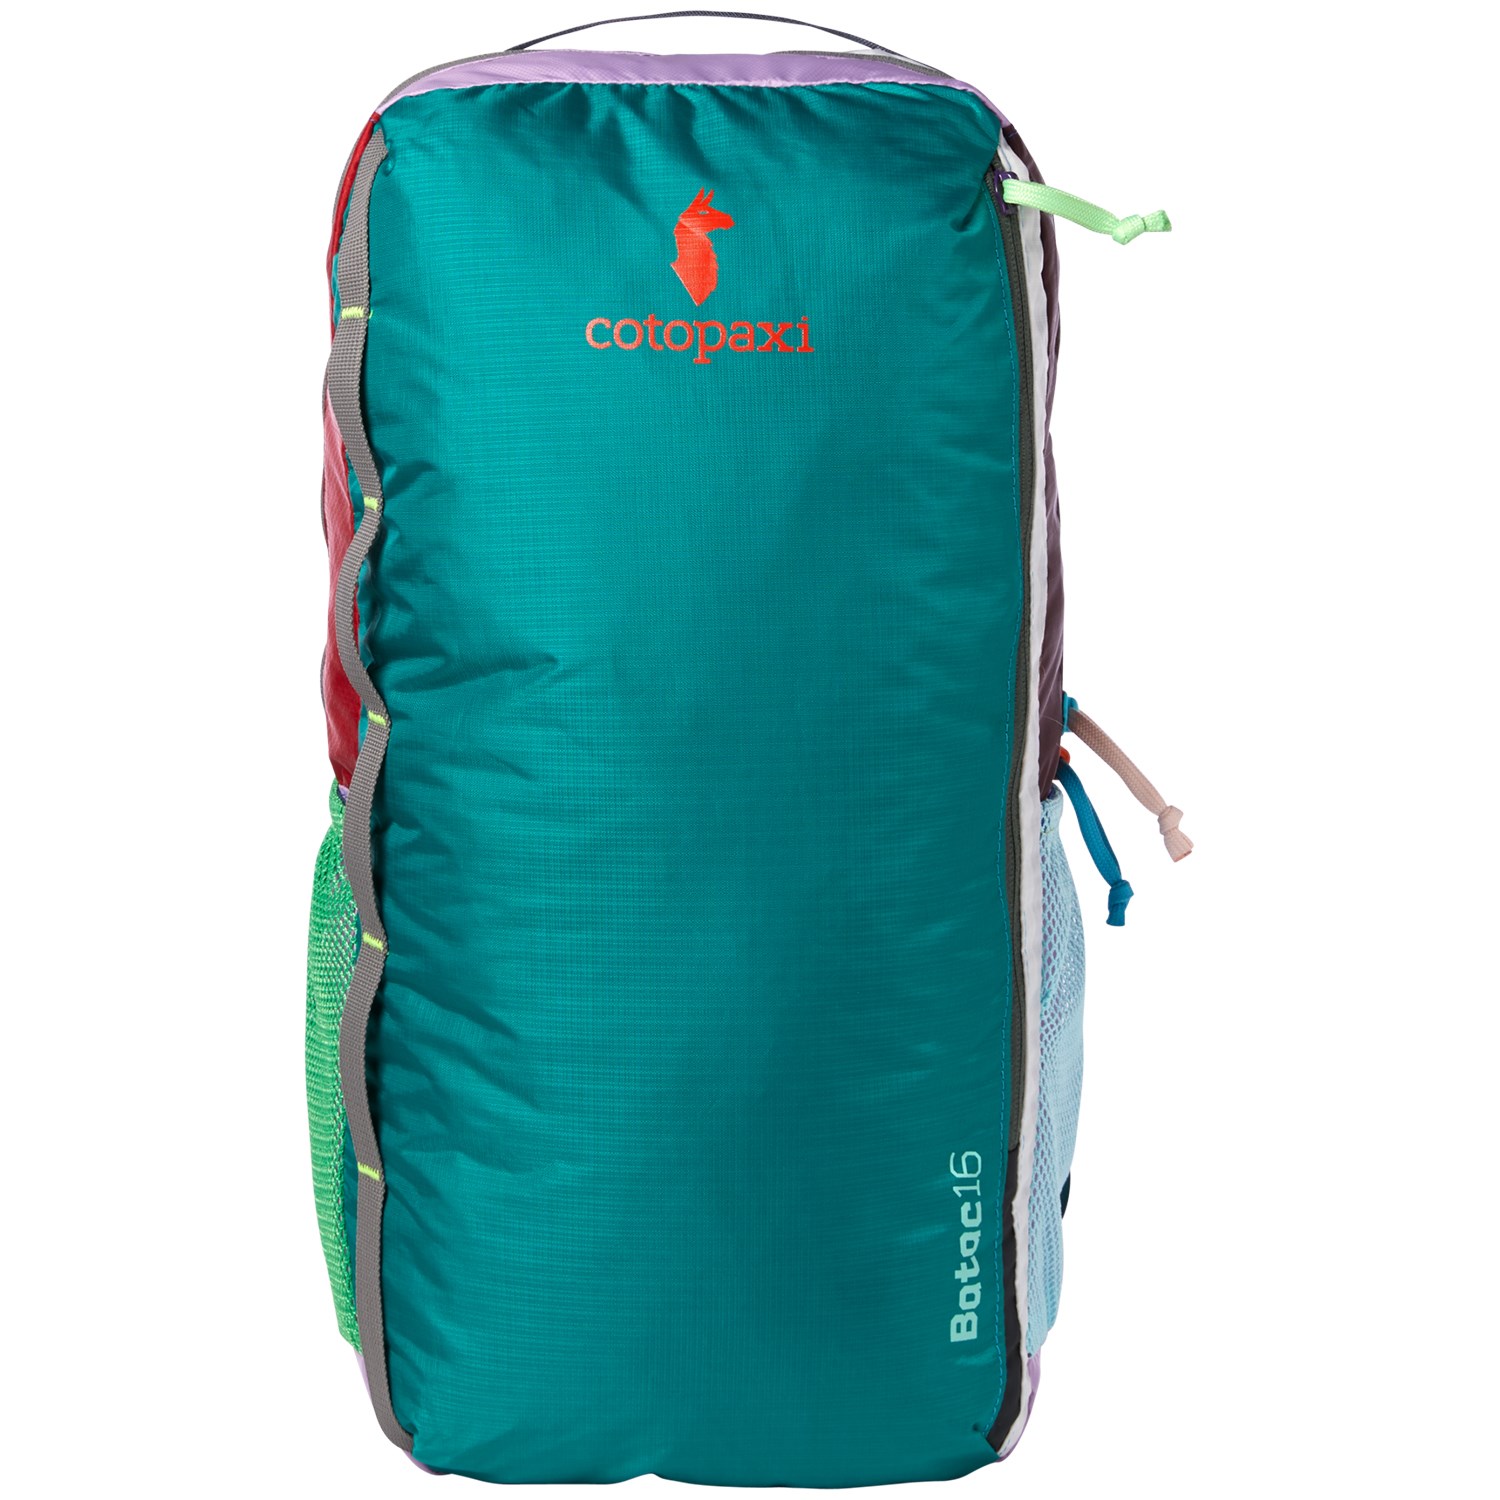 Cotopaxi Batac 16l Backpack | epicrally.co.uk